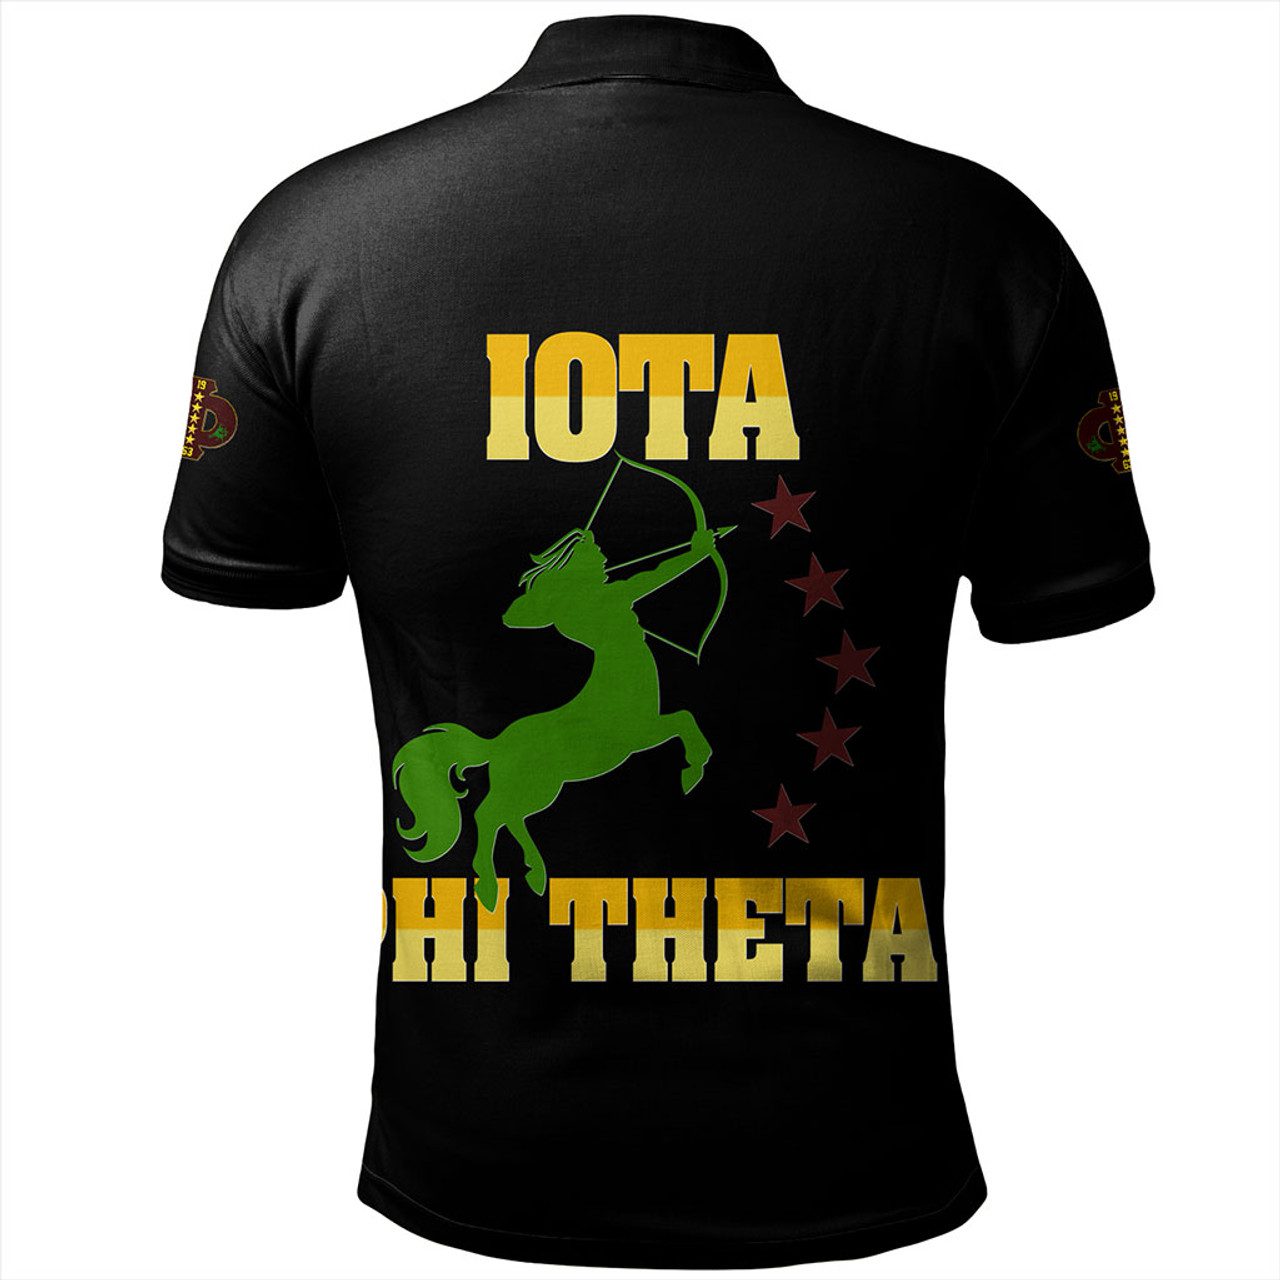 Iota Phi Theta Polo Shirt Letter